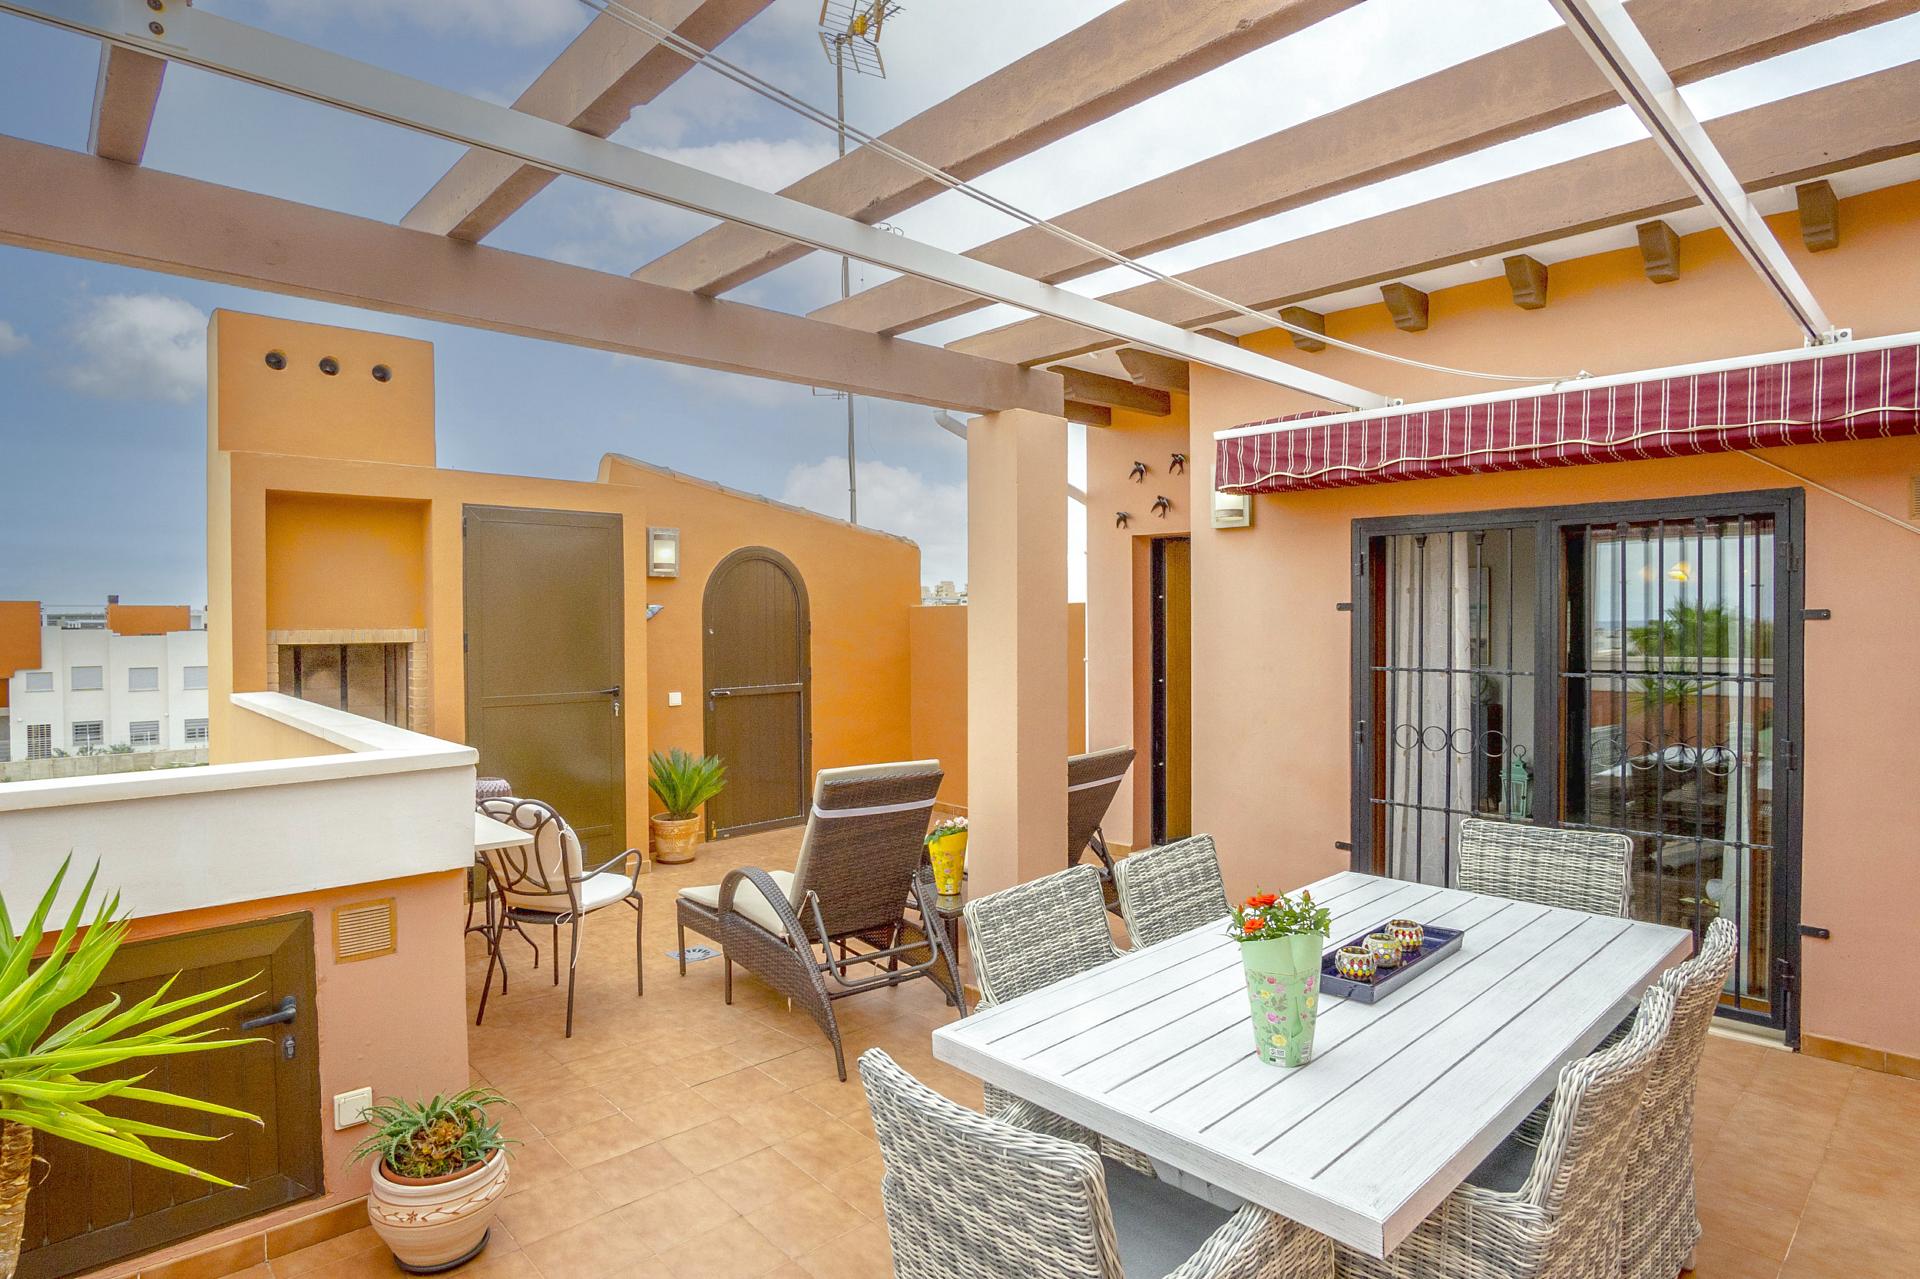 Mediterrane penthouse te koop in Res. Altos del Sol, één van de beste woonwijken van Torrevieja.